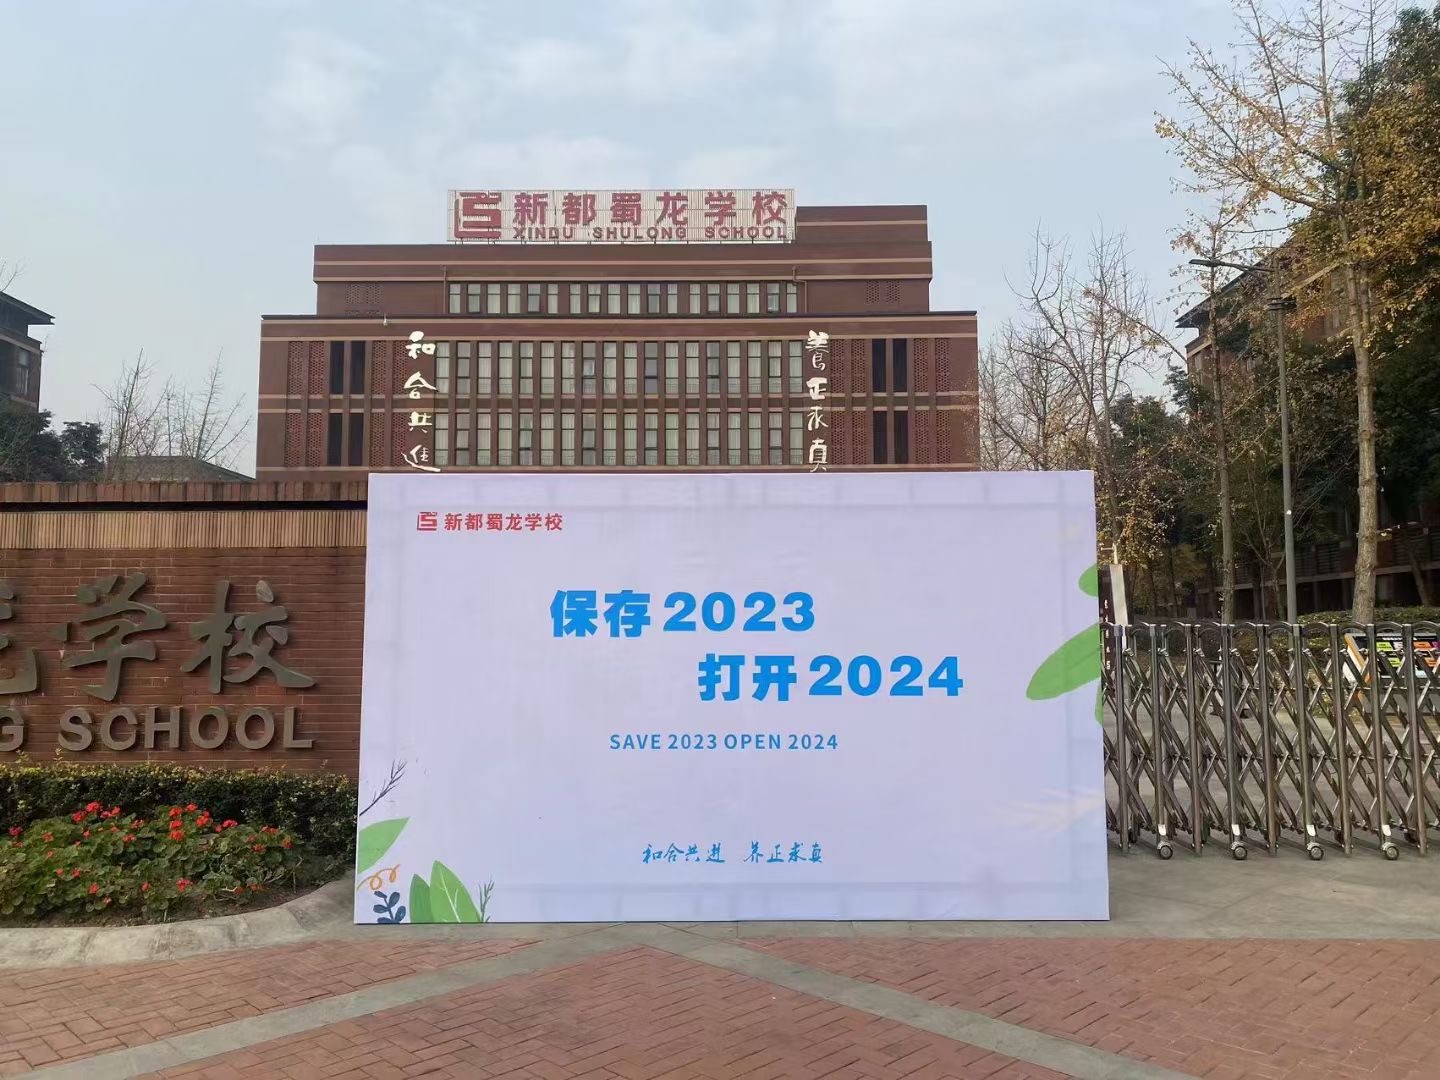 新都蜀龙学校保存2023，打开2024活动设计(图2)